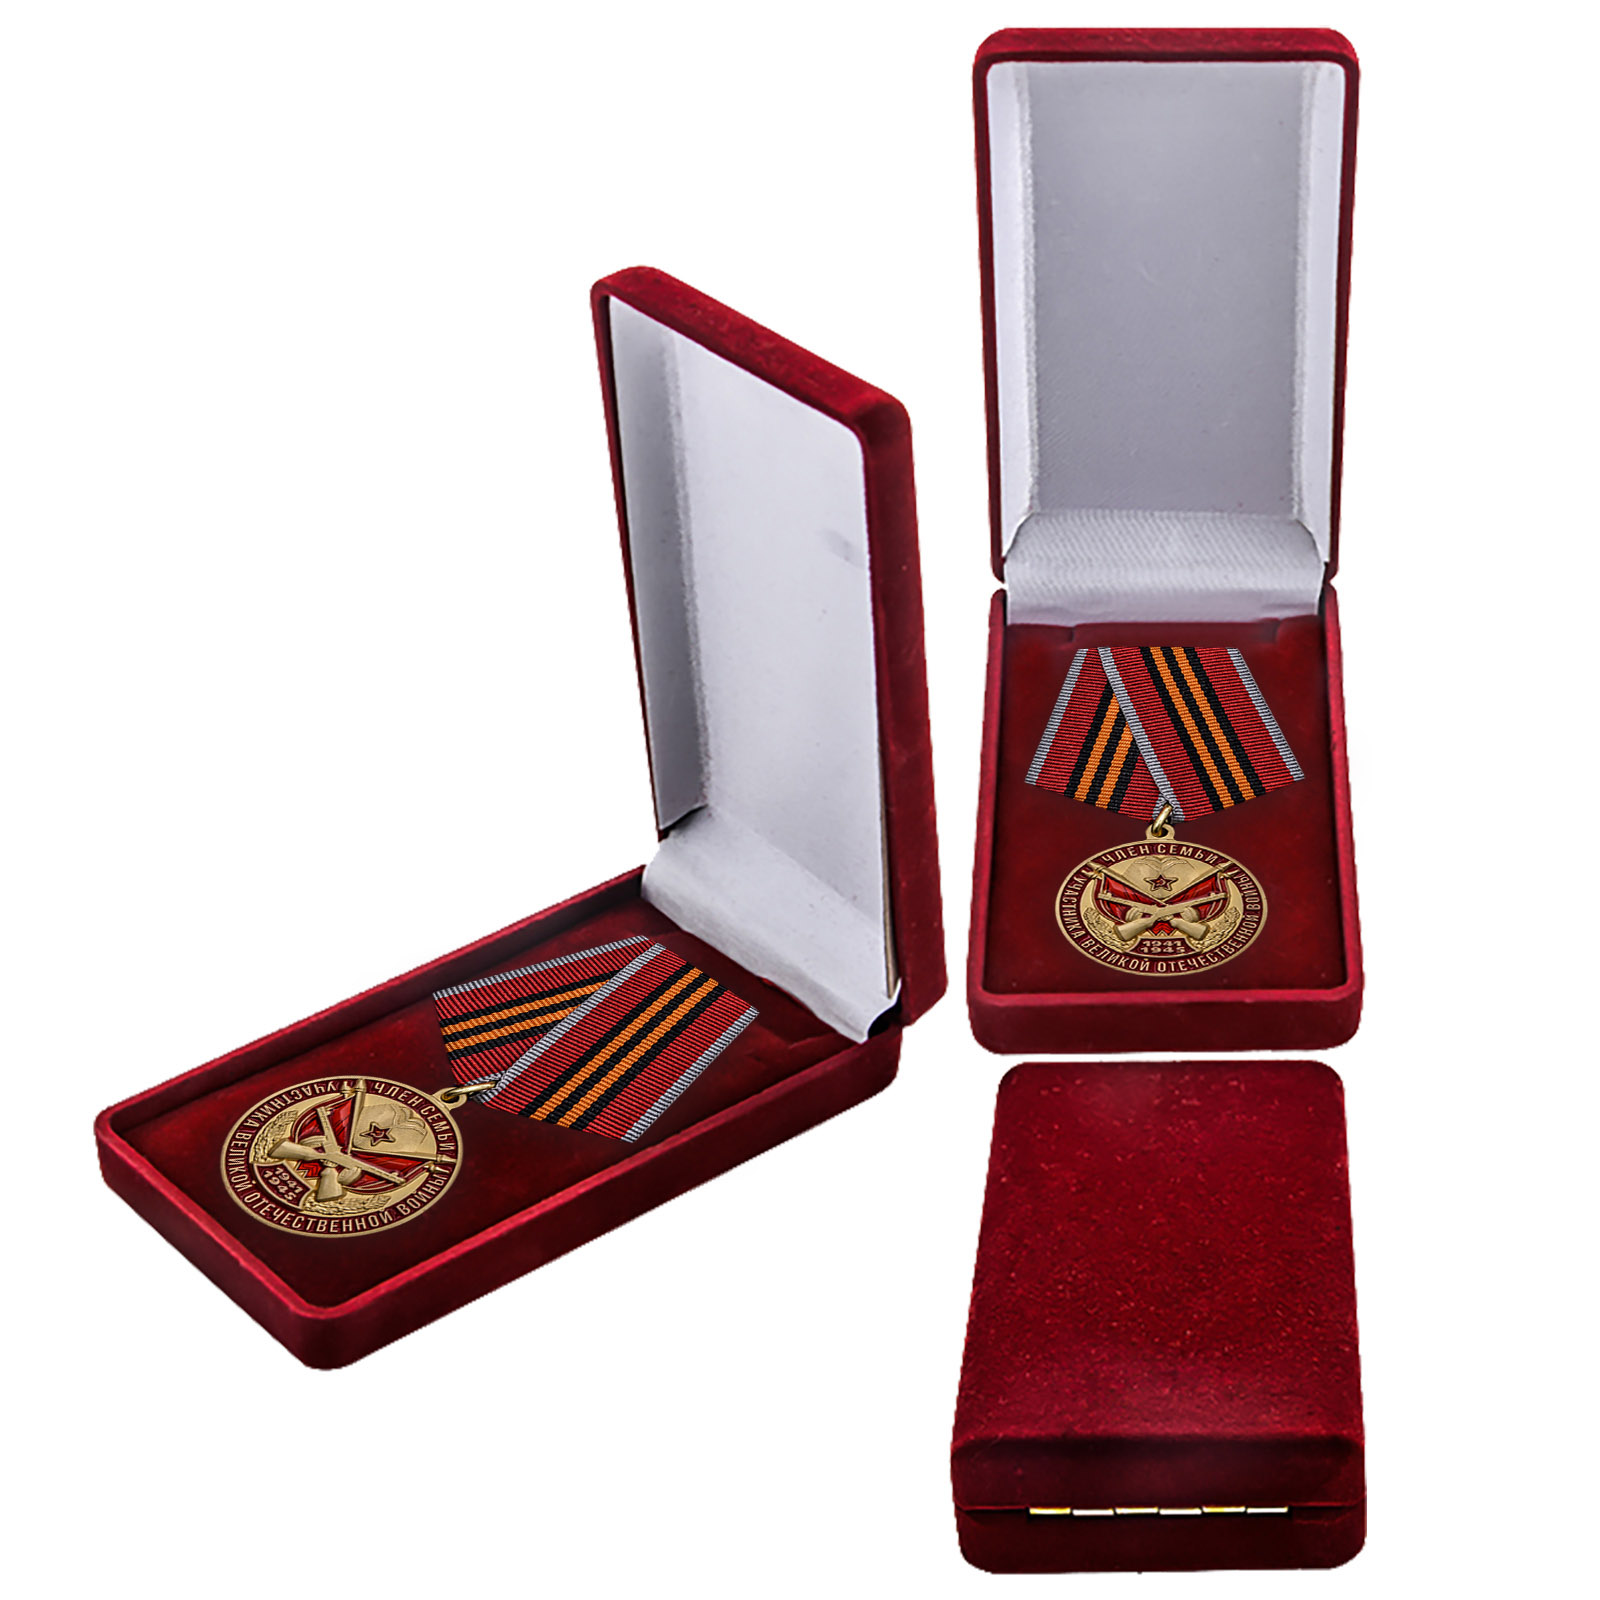 Купить памятную медаль Член семьи участника ВОВ онлайн с доставкой